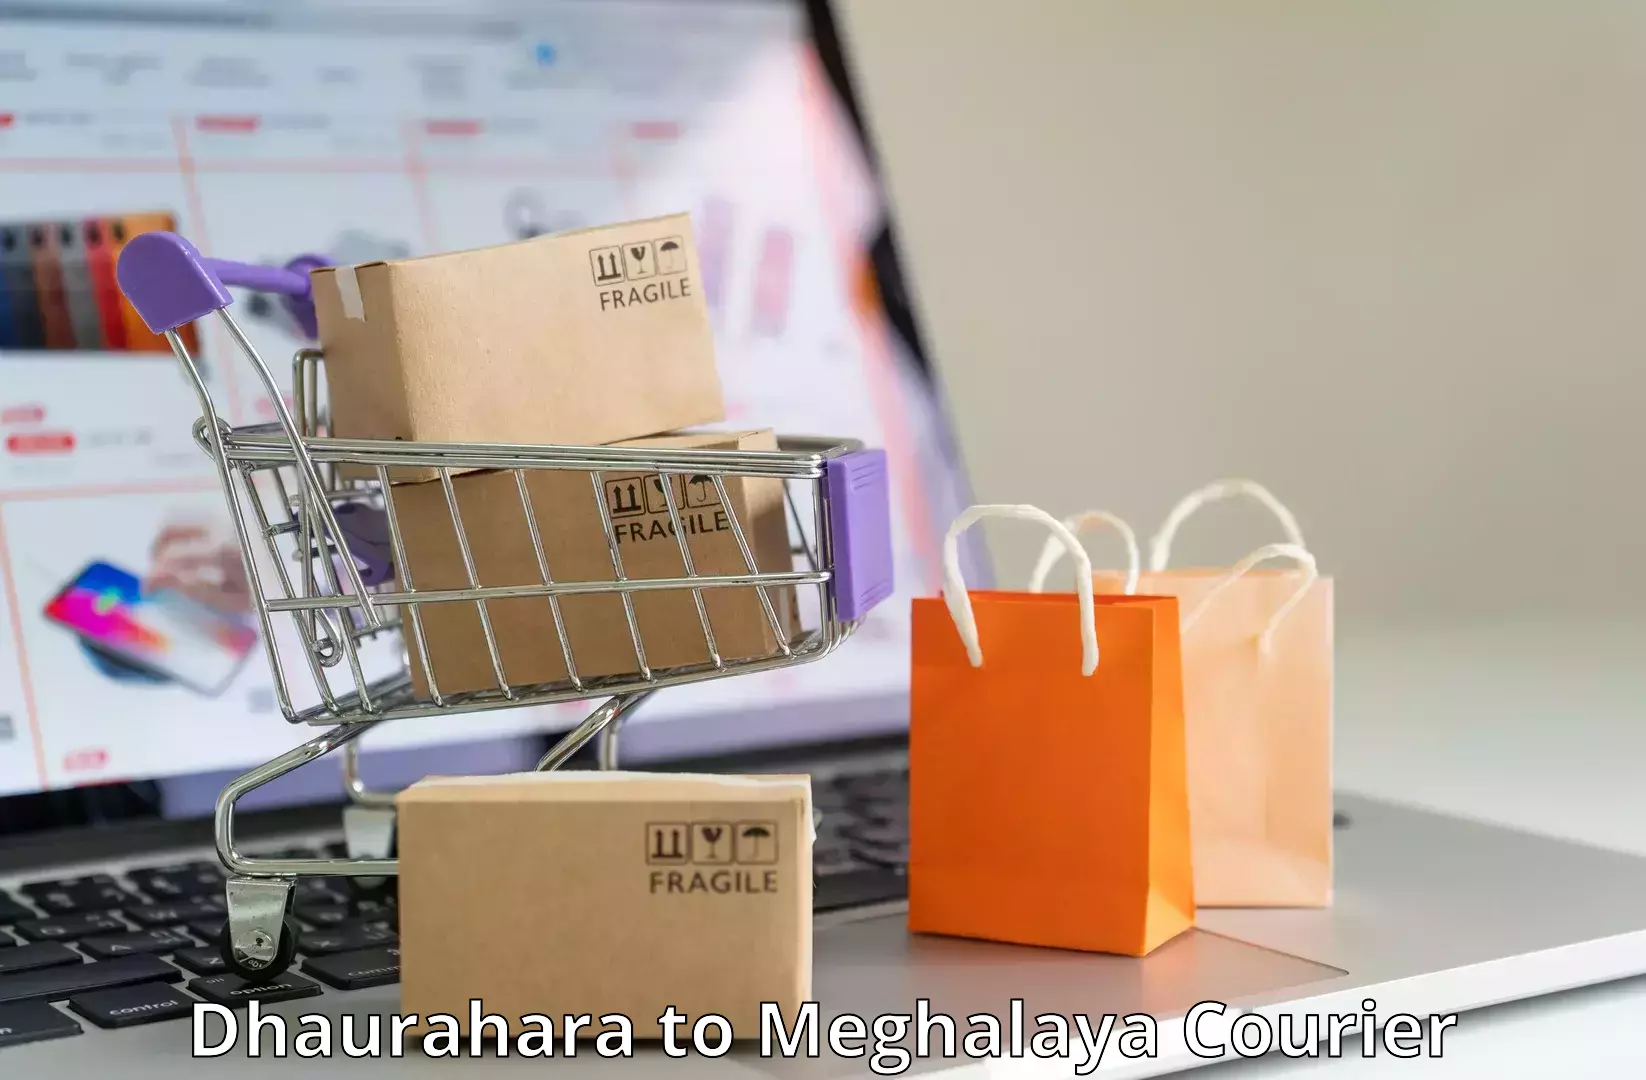 Expedited shipping solutions Dhaurahara to Meghalaya